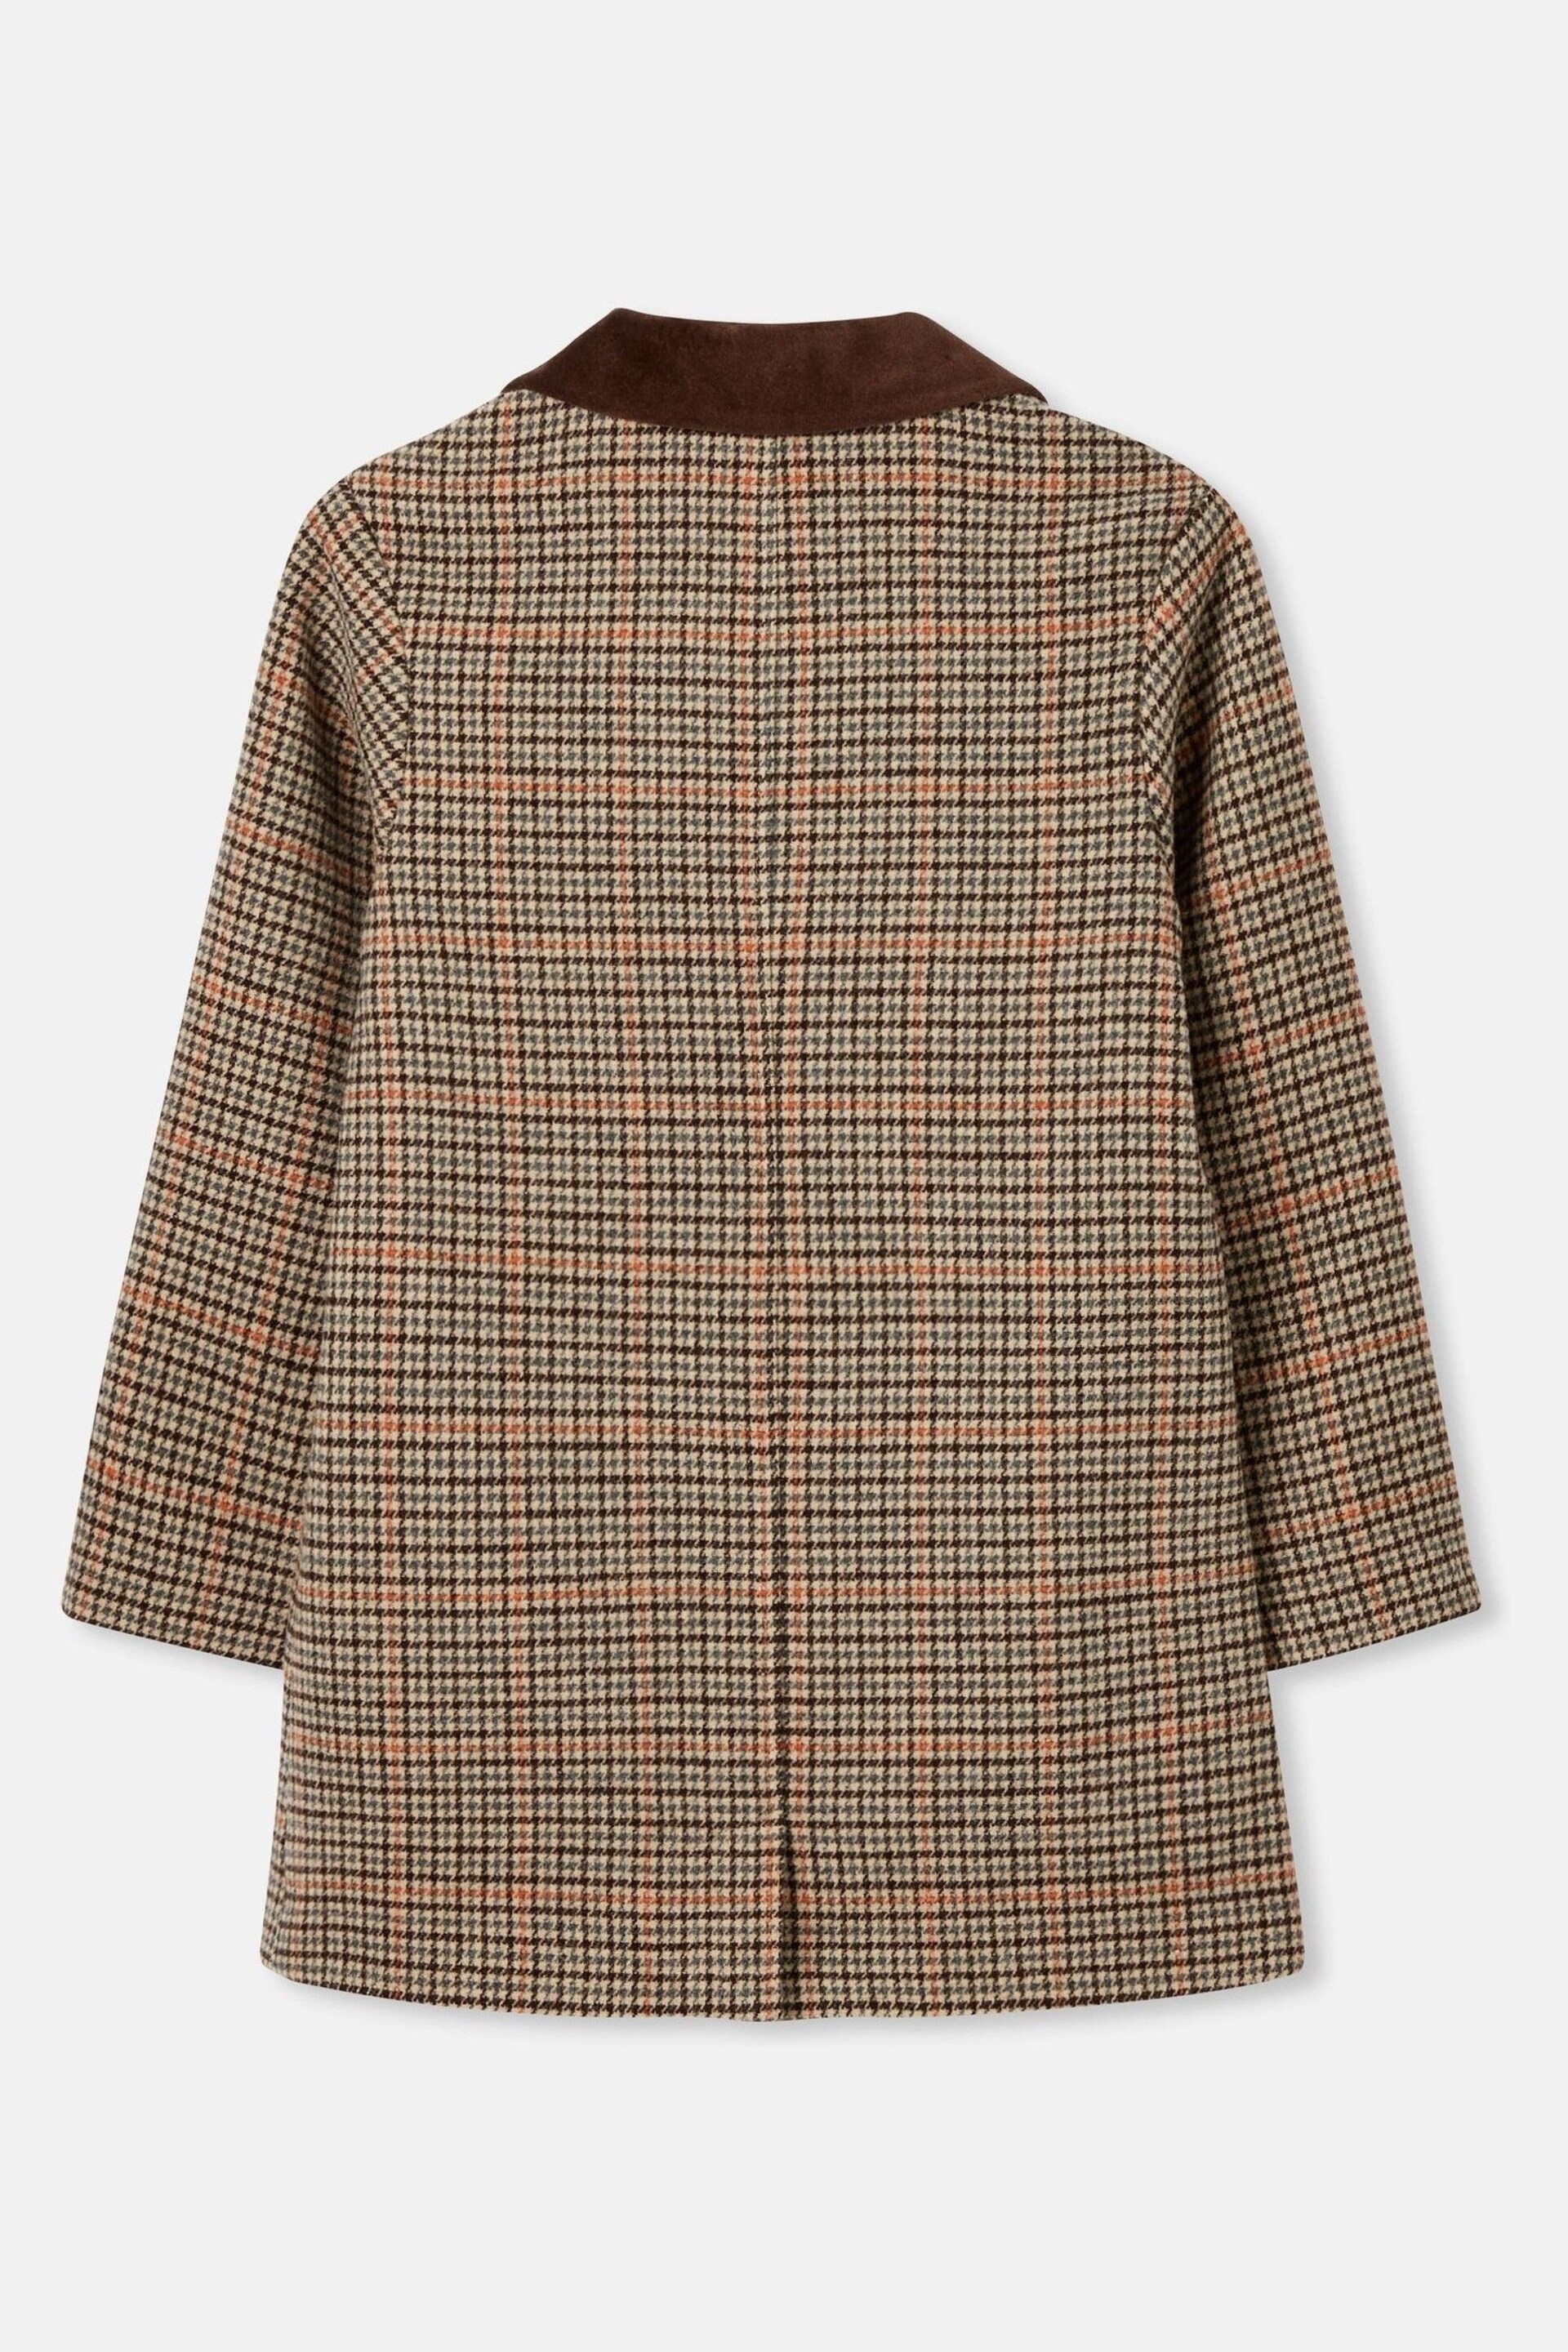 Joules Harrow Brown Wool Coat - Image 3 of 7